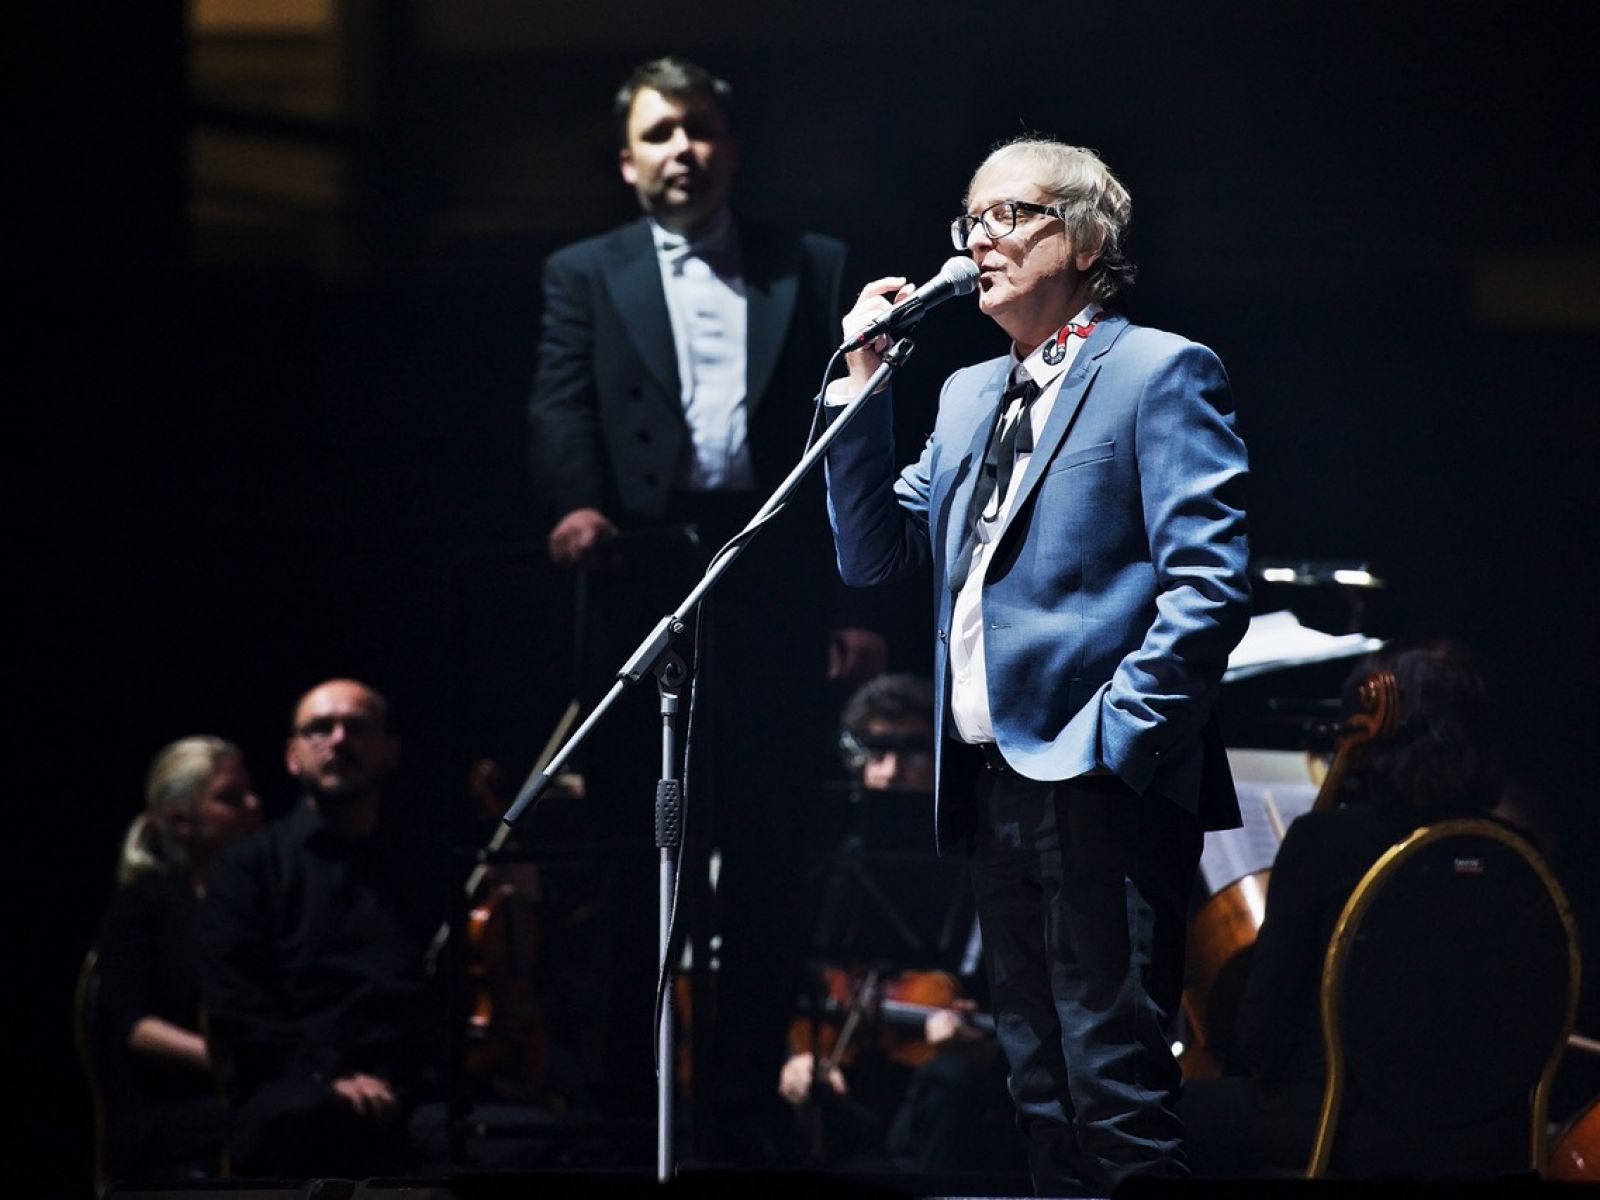 Miro Žbirka symfonicky a James Bond zahájí festival Soundtrack v Poděbradech